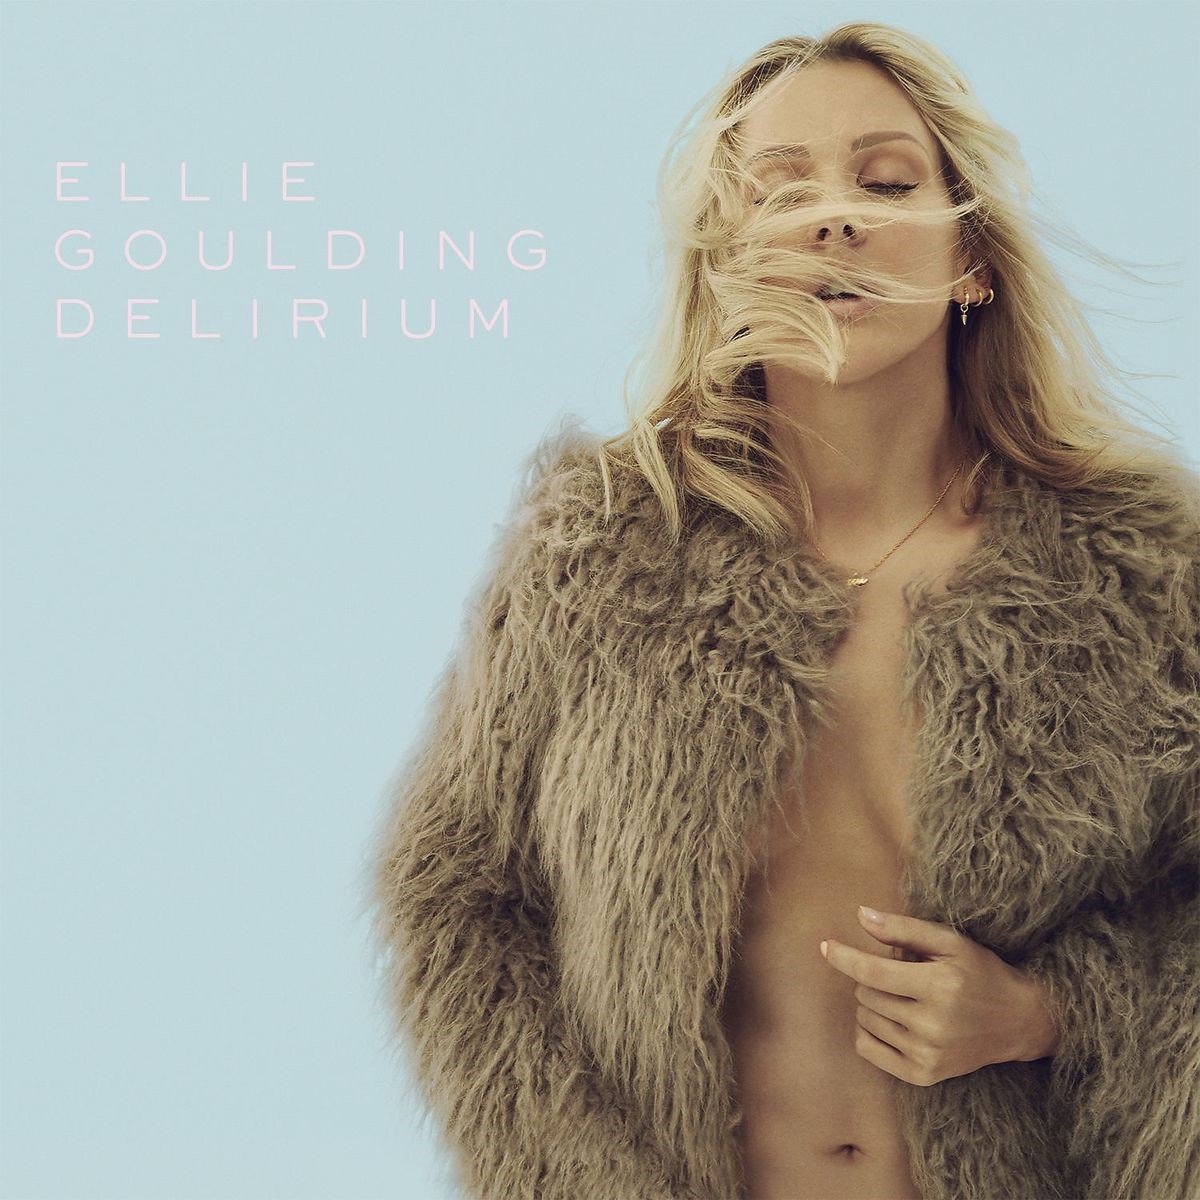 Ellie Goulding - Delirium (CD) - Ellie Goulding